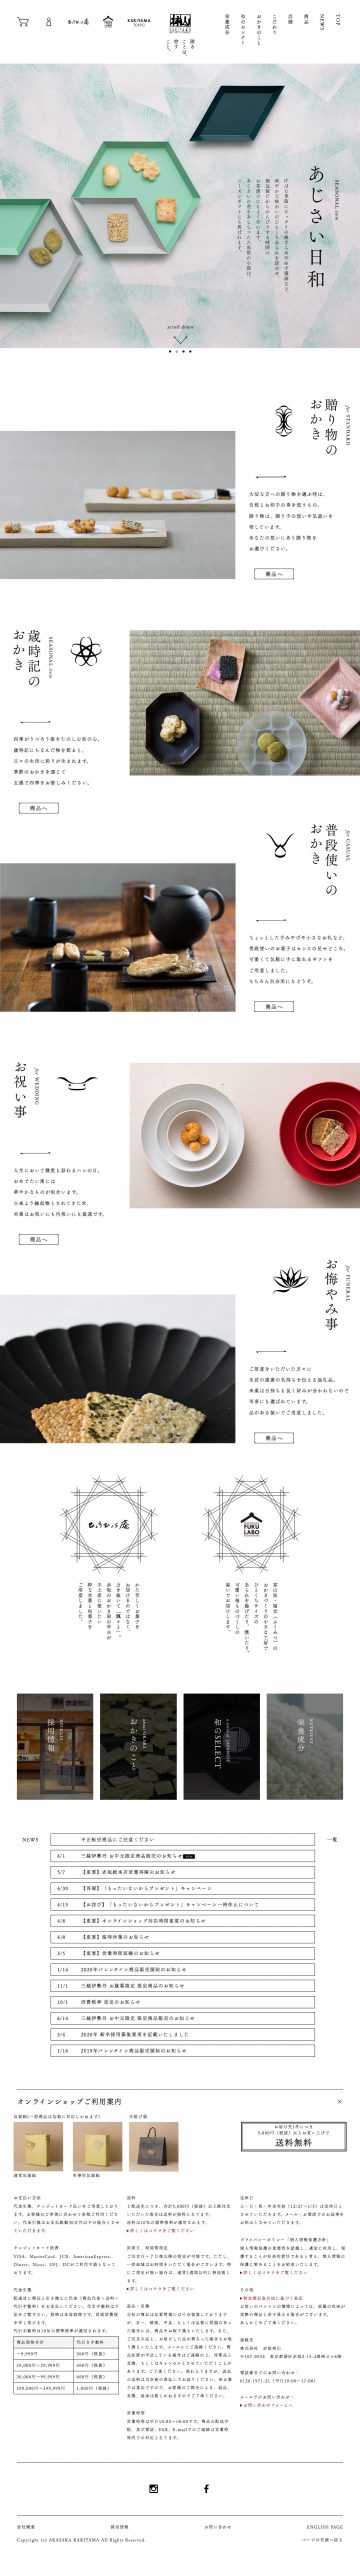 食品・飲料 ホームページ制作 WEBデザイン参考ギャラリー 赤坂柿山